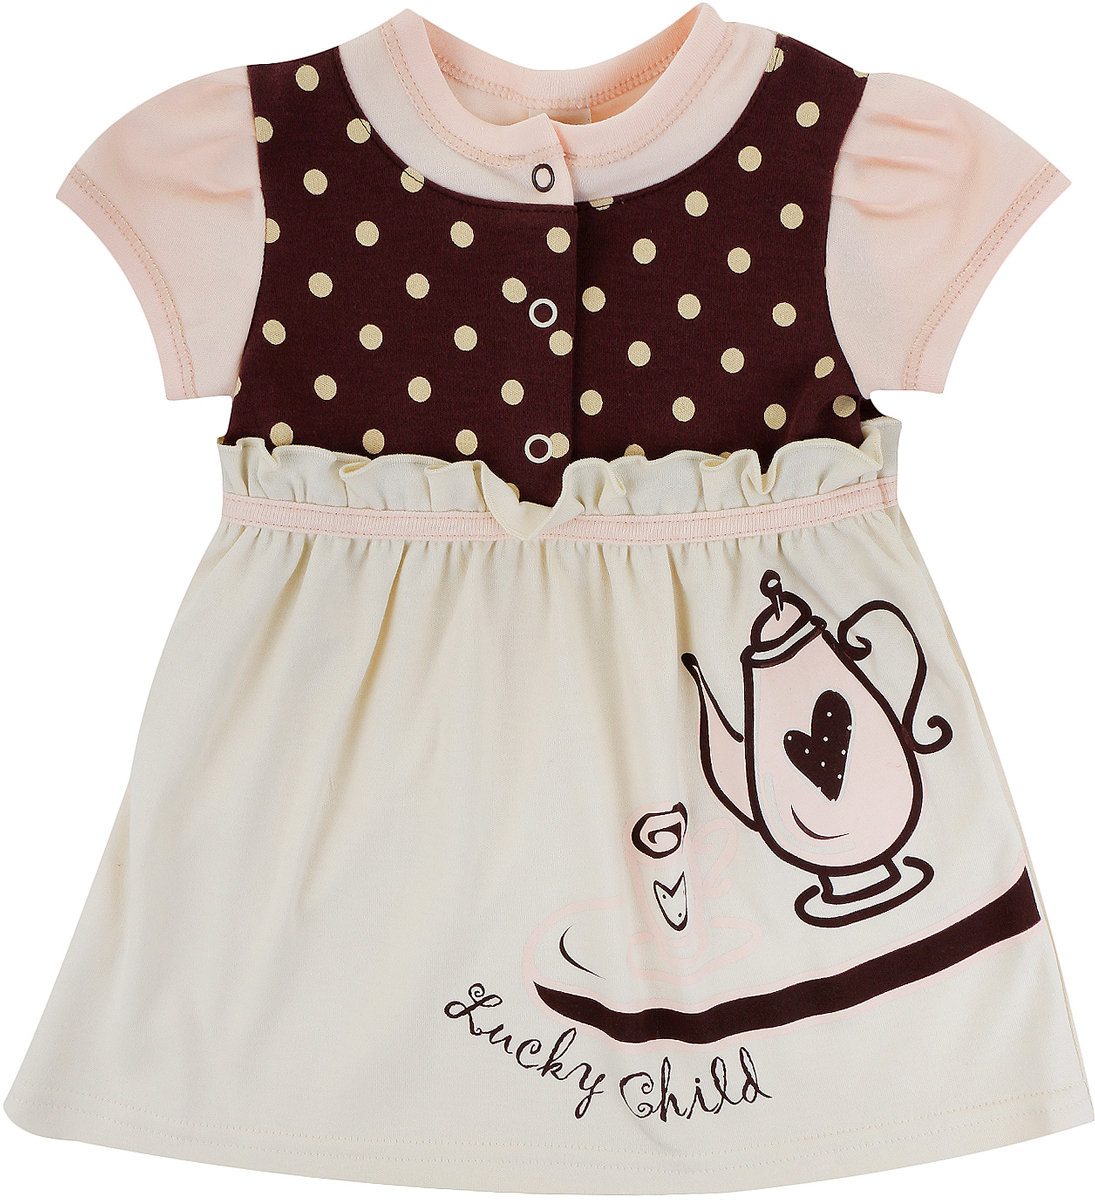 Платье для девочки Lucky Child Летнее кафе, цвет: бежевый, коричневый. 23-62. Размер 92/98